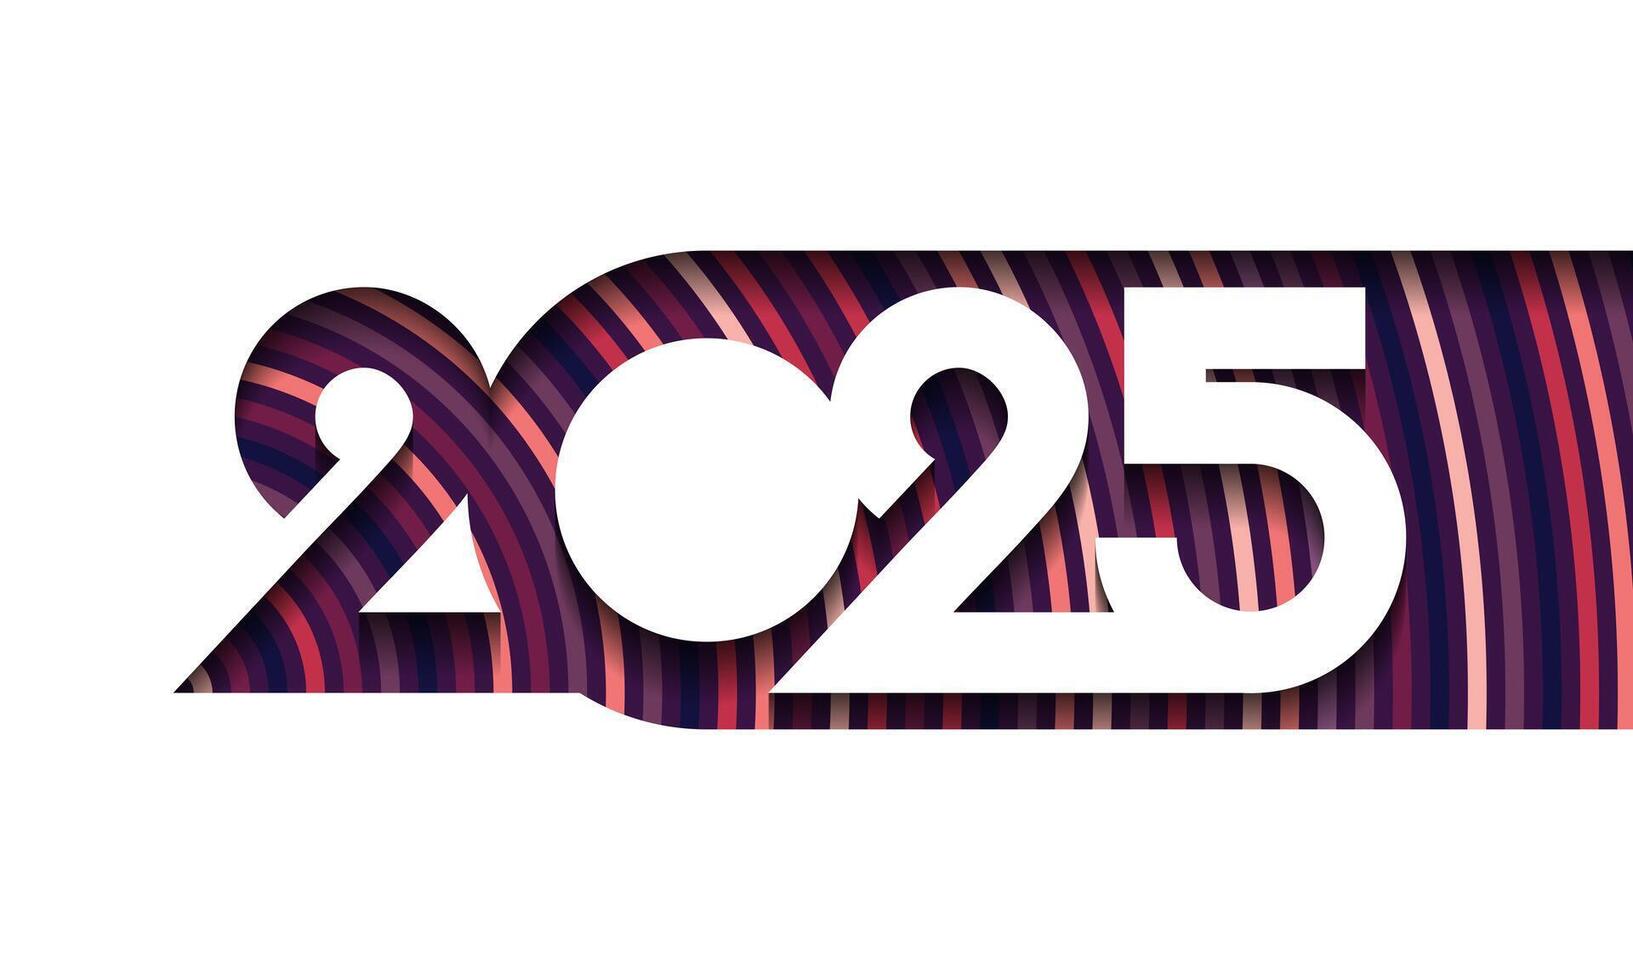 2025 contento nuevo año antecedentes diseño. vector